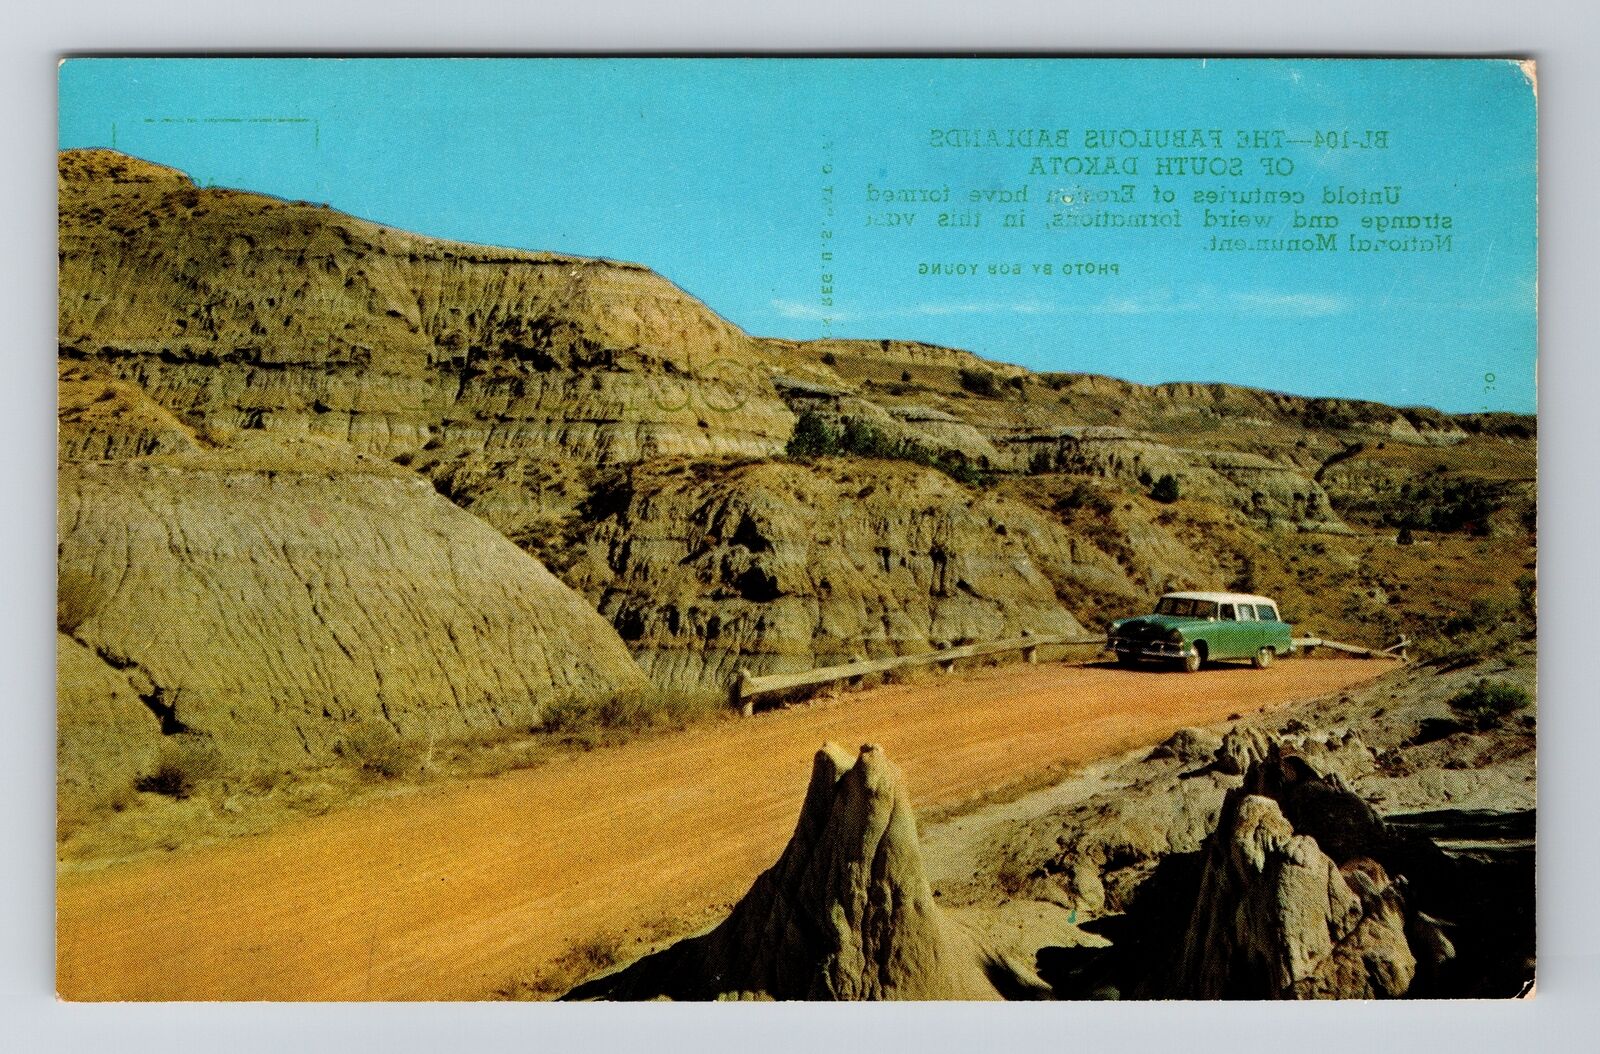 SD-South Dakota, Badlands, National Monument, Vintage Postcard